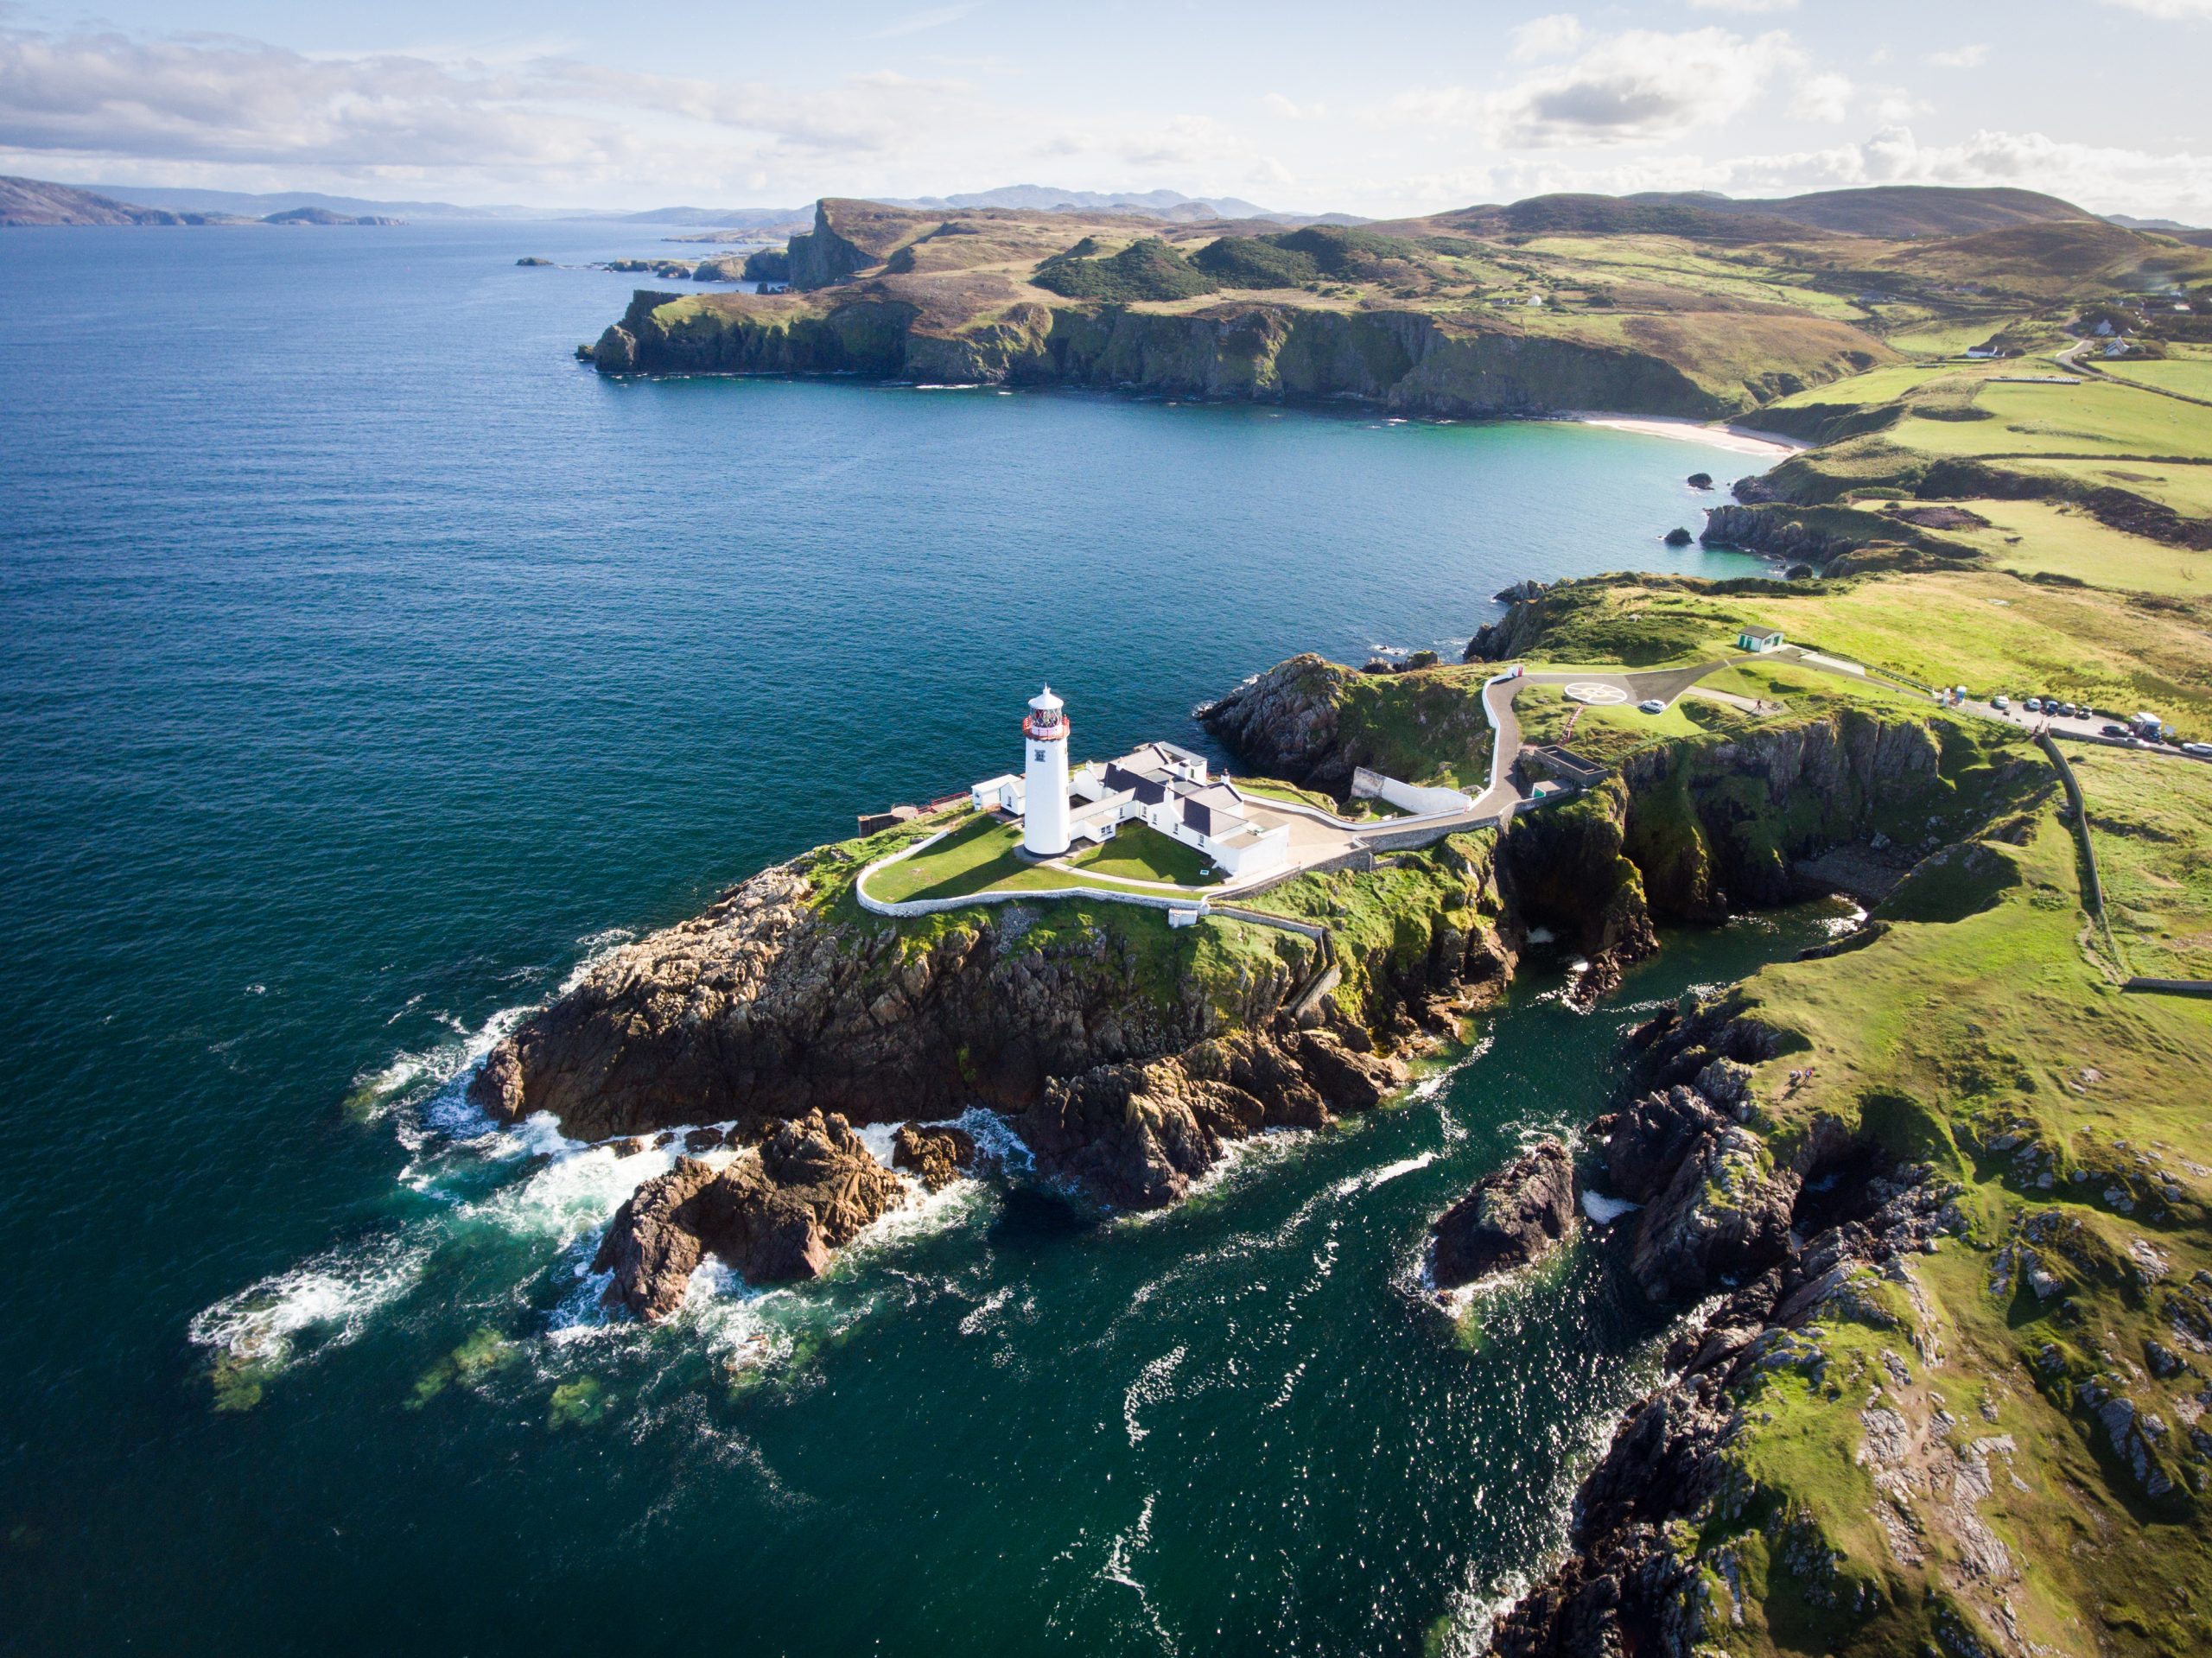 Údarás na Gaeltachta Fanad Head Lighthouse, Donegal